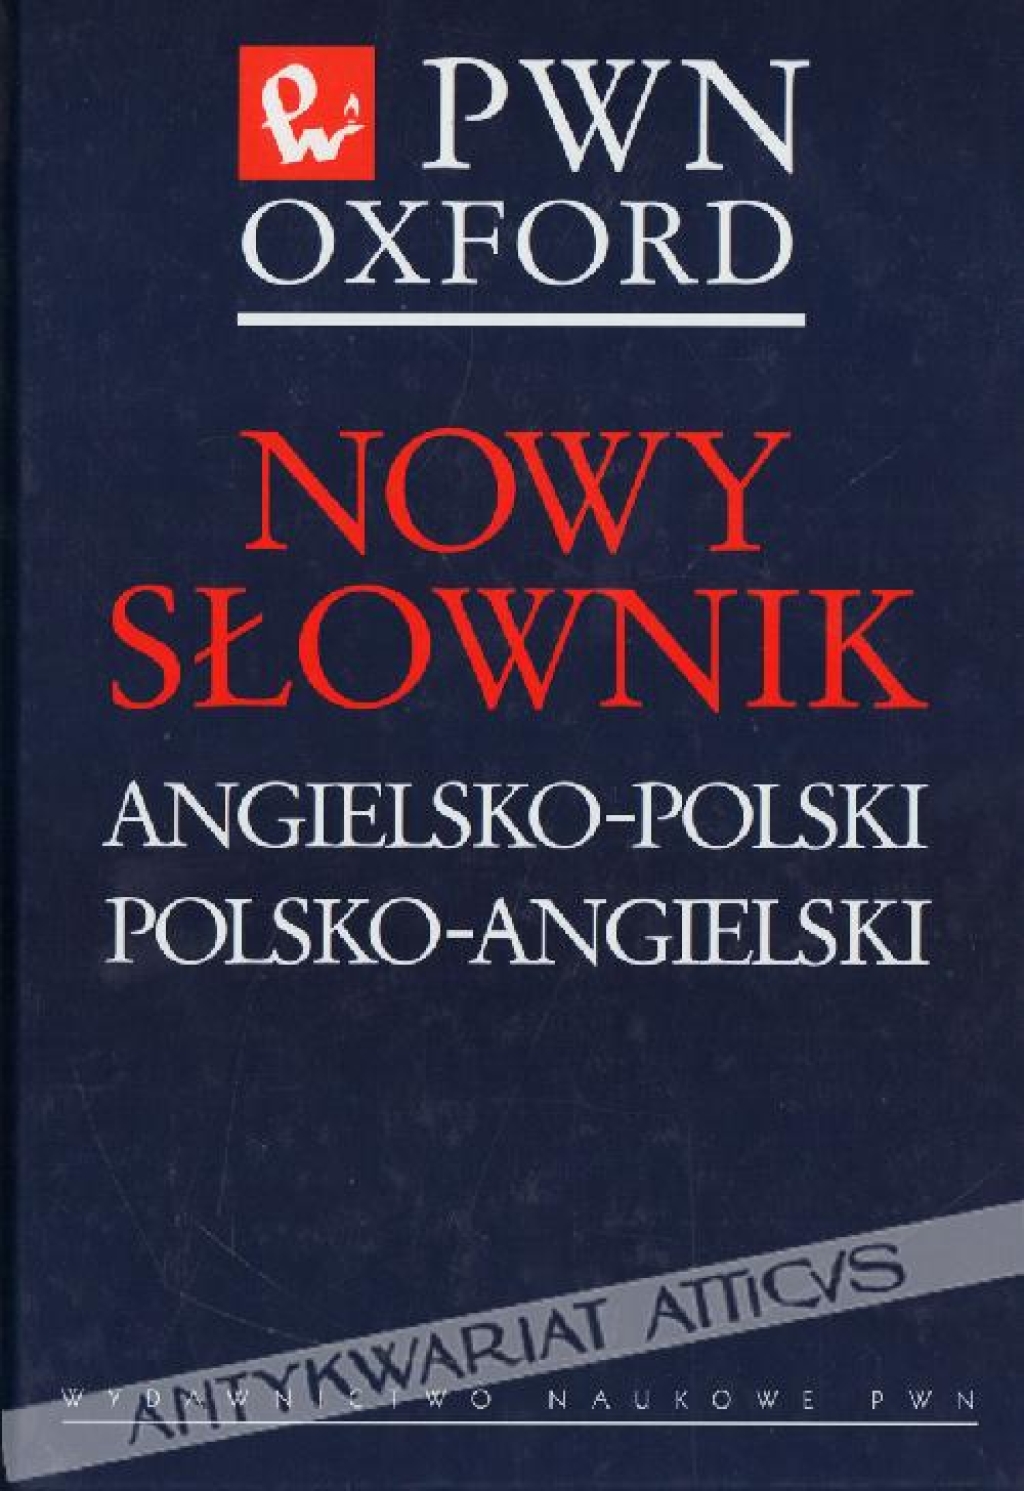 Nowy słownik angielsko-polski, polsko-angielski